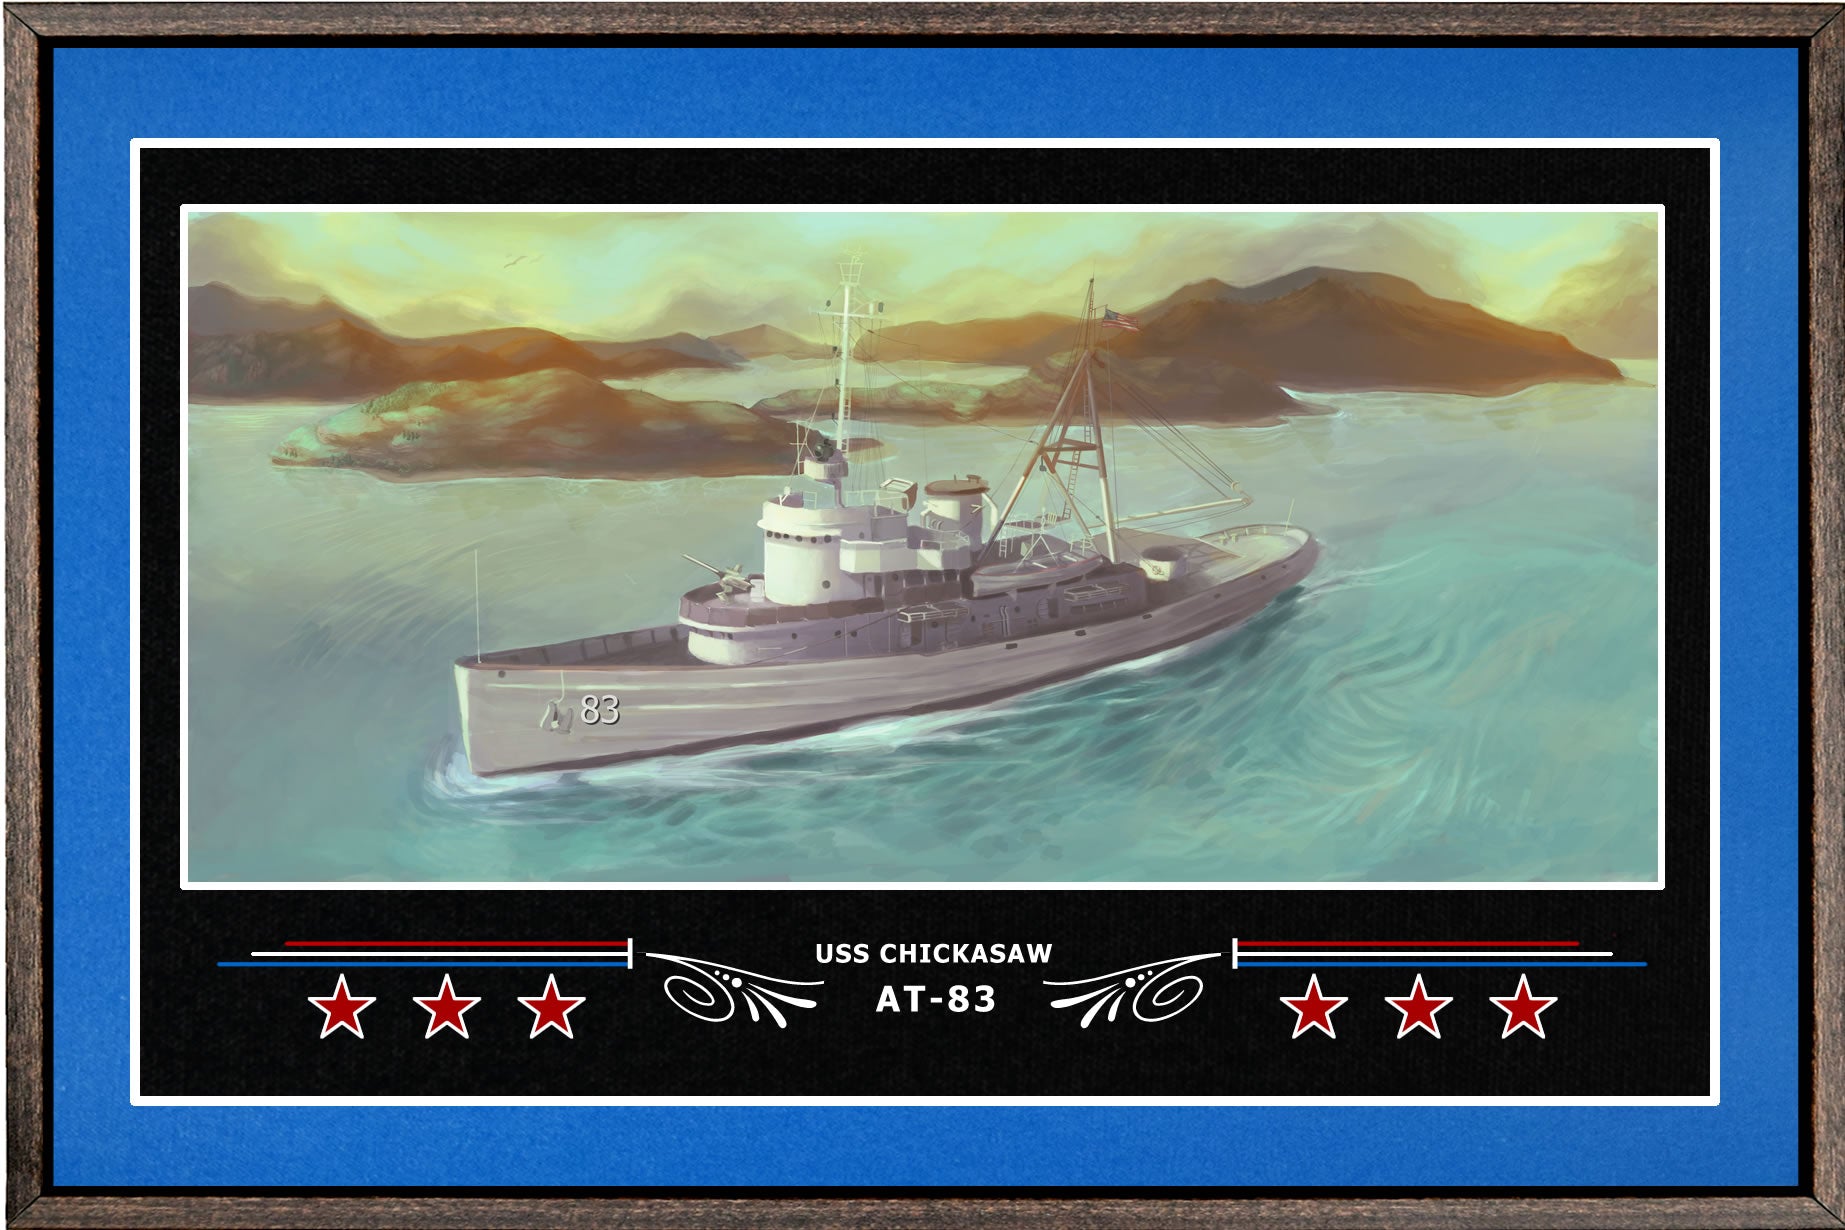 USS CHICKASAW AT 83 BOX FRAMED CANVAS ART BLUE